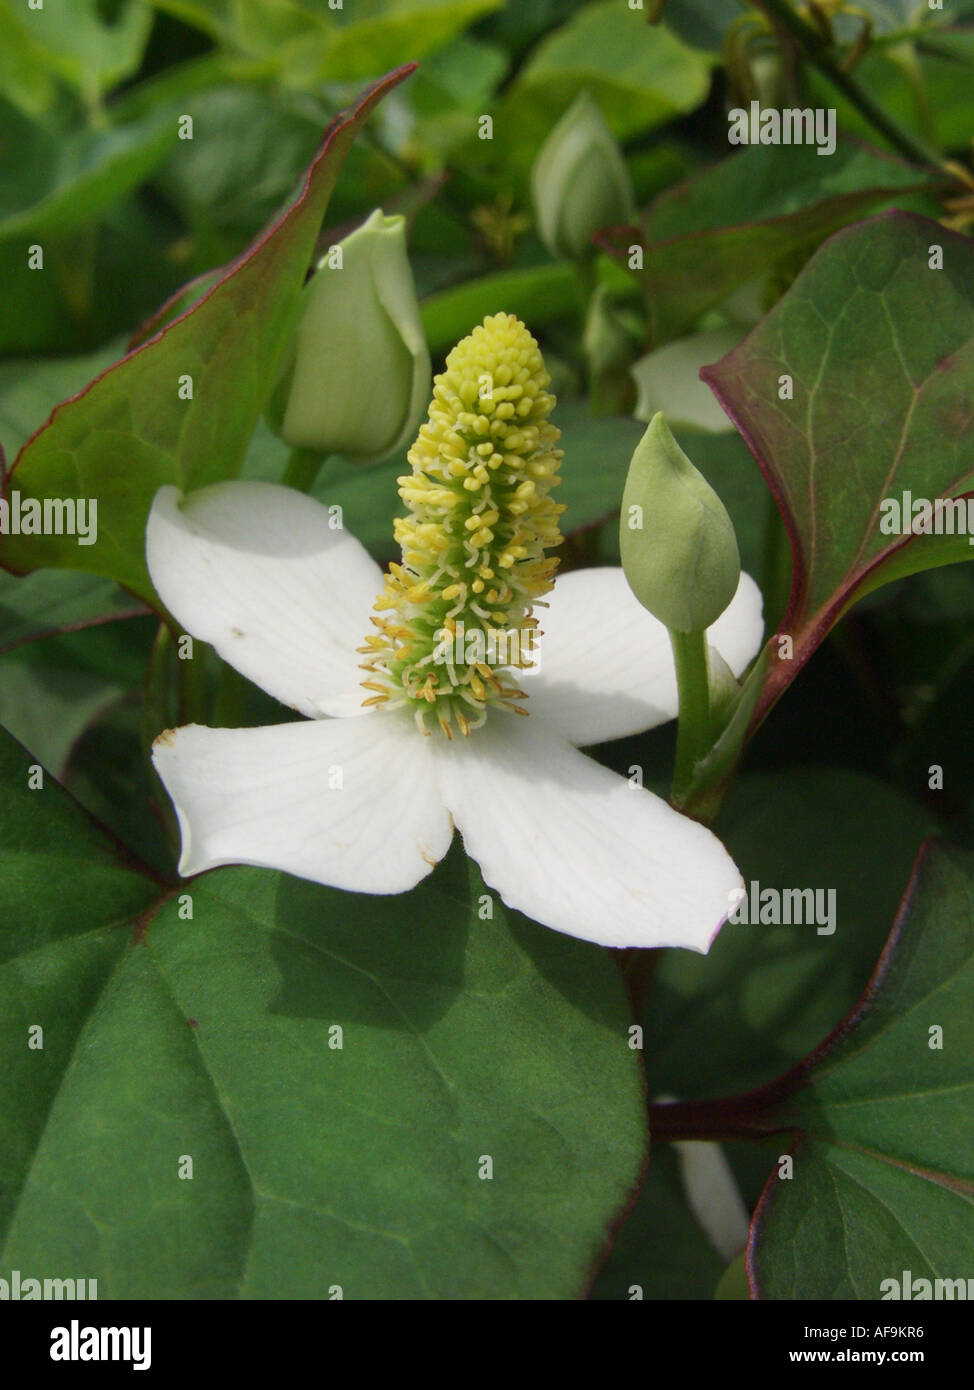 Chinesische Echsenschwanz, Chamäleon-Pflanze, Fishwort, Telekie, Vap ca  (Houttuynia Cordata), Blütenstand mit vier weißen Hochblättern  Stockfotografie - Alamy